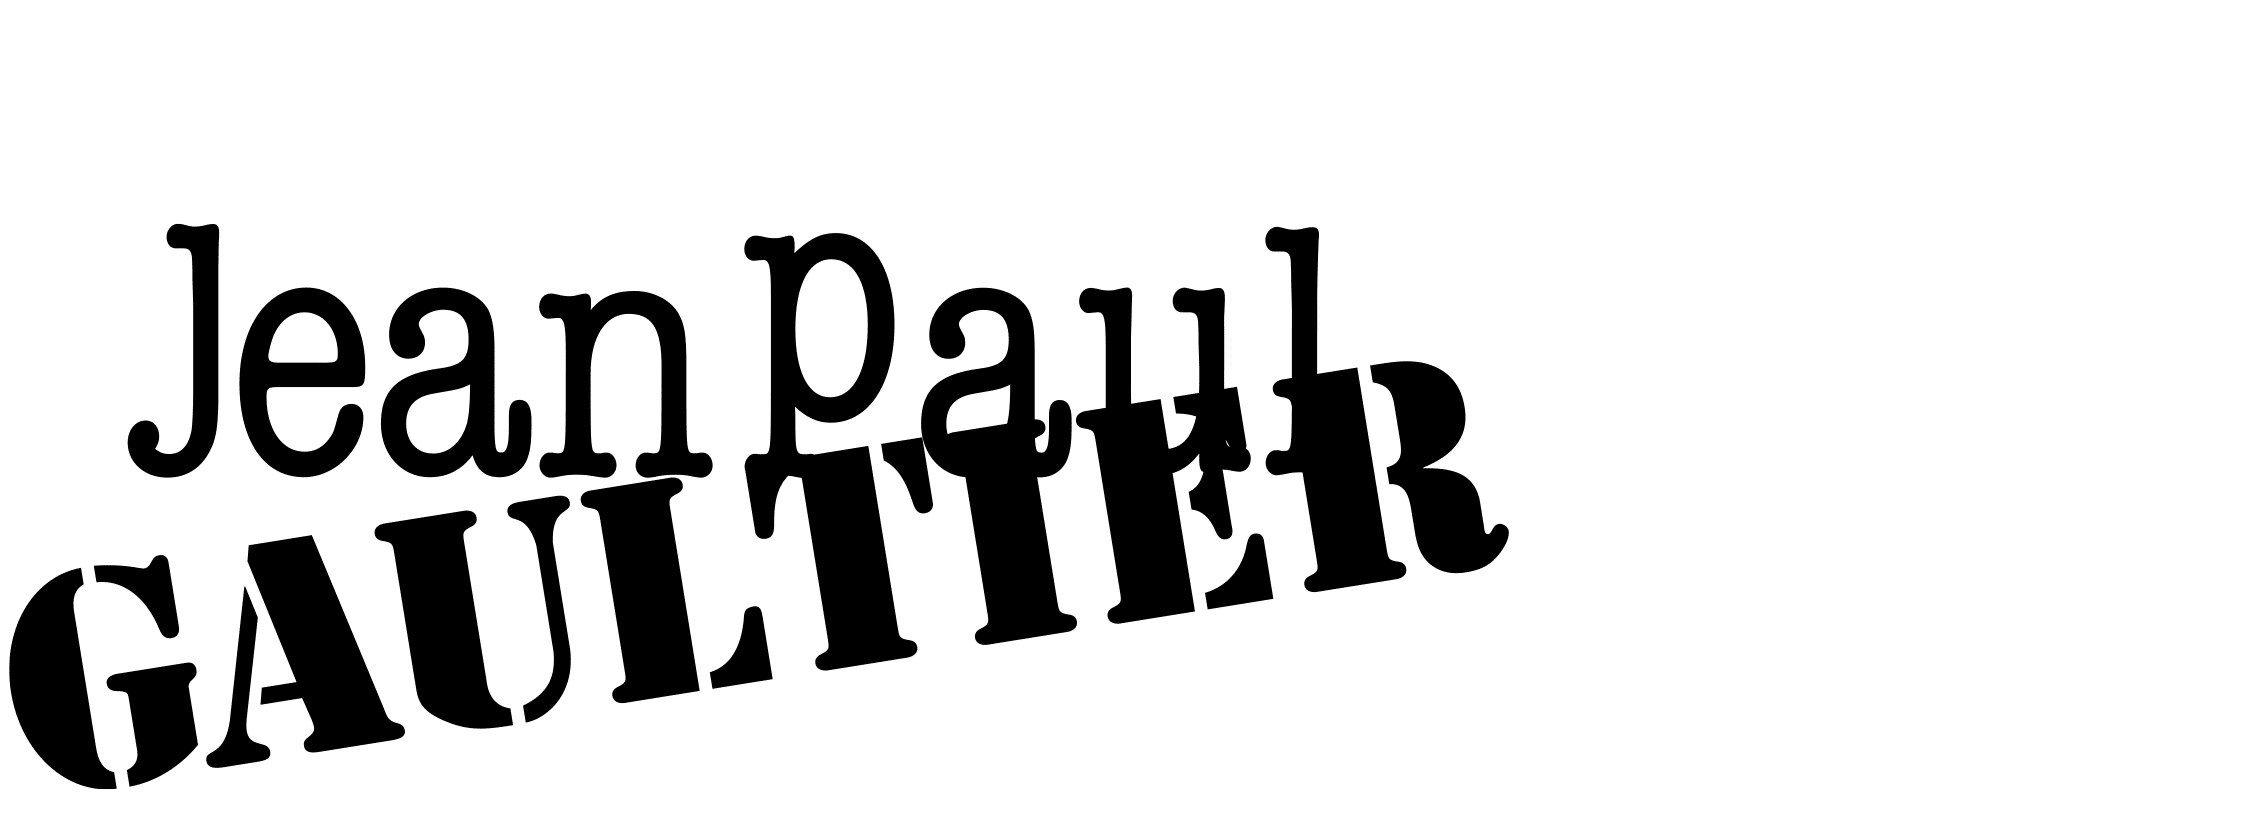 Contacter Jean-Paul Gaultier : adresse postale, e-mail, téléphone, réseaux sociaux - Voulez-vous laisser un message à Jean-Paul Gaultier ?
